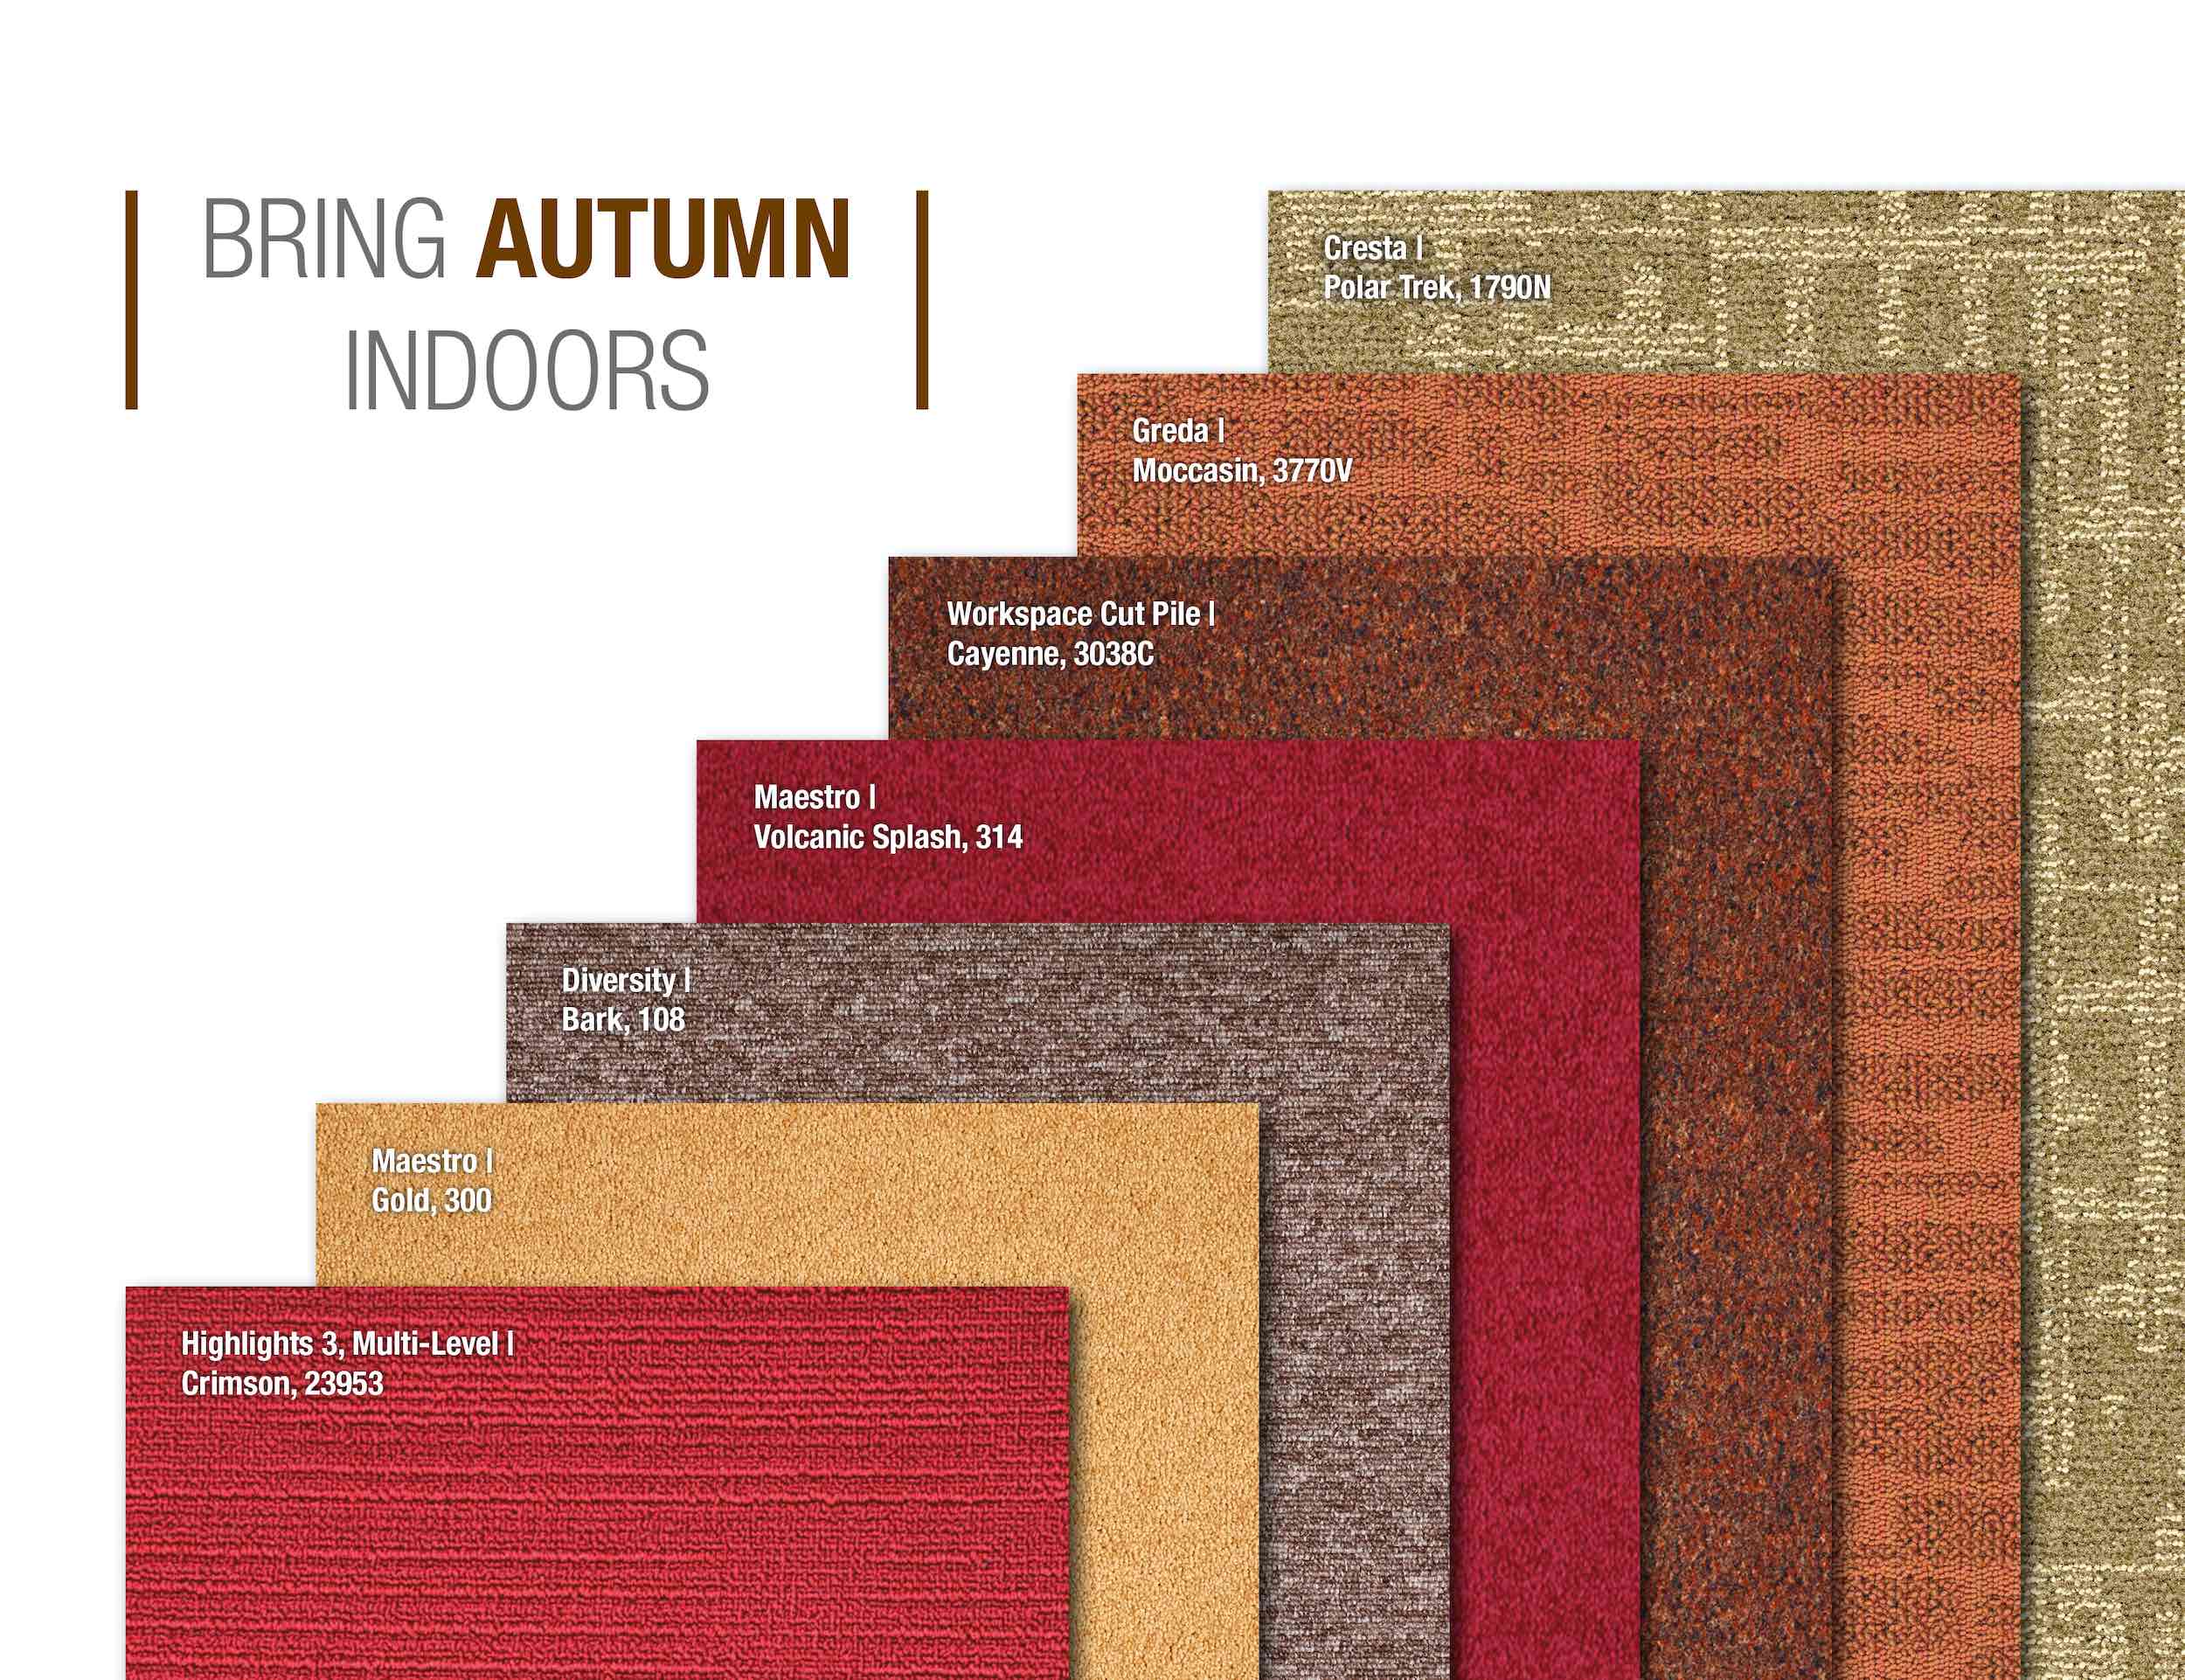 Paragon Carpet Tiles | Autumn Indoors Inspiration | Commercial Carpet Tiles